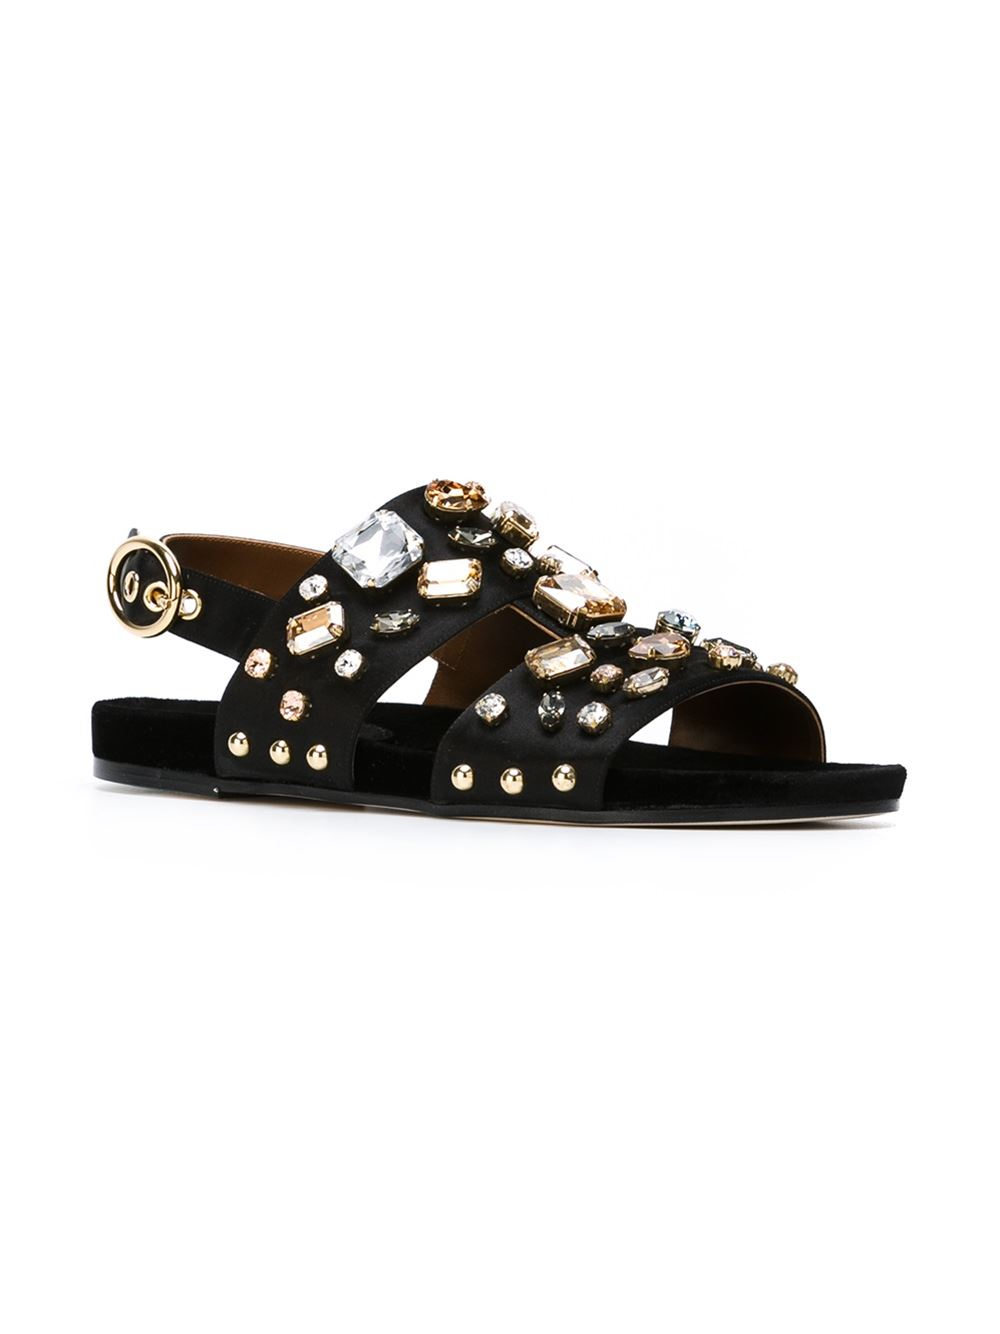 Dolce & gabbana Crystal Embellished Sandals in Black | Lyst